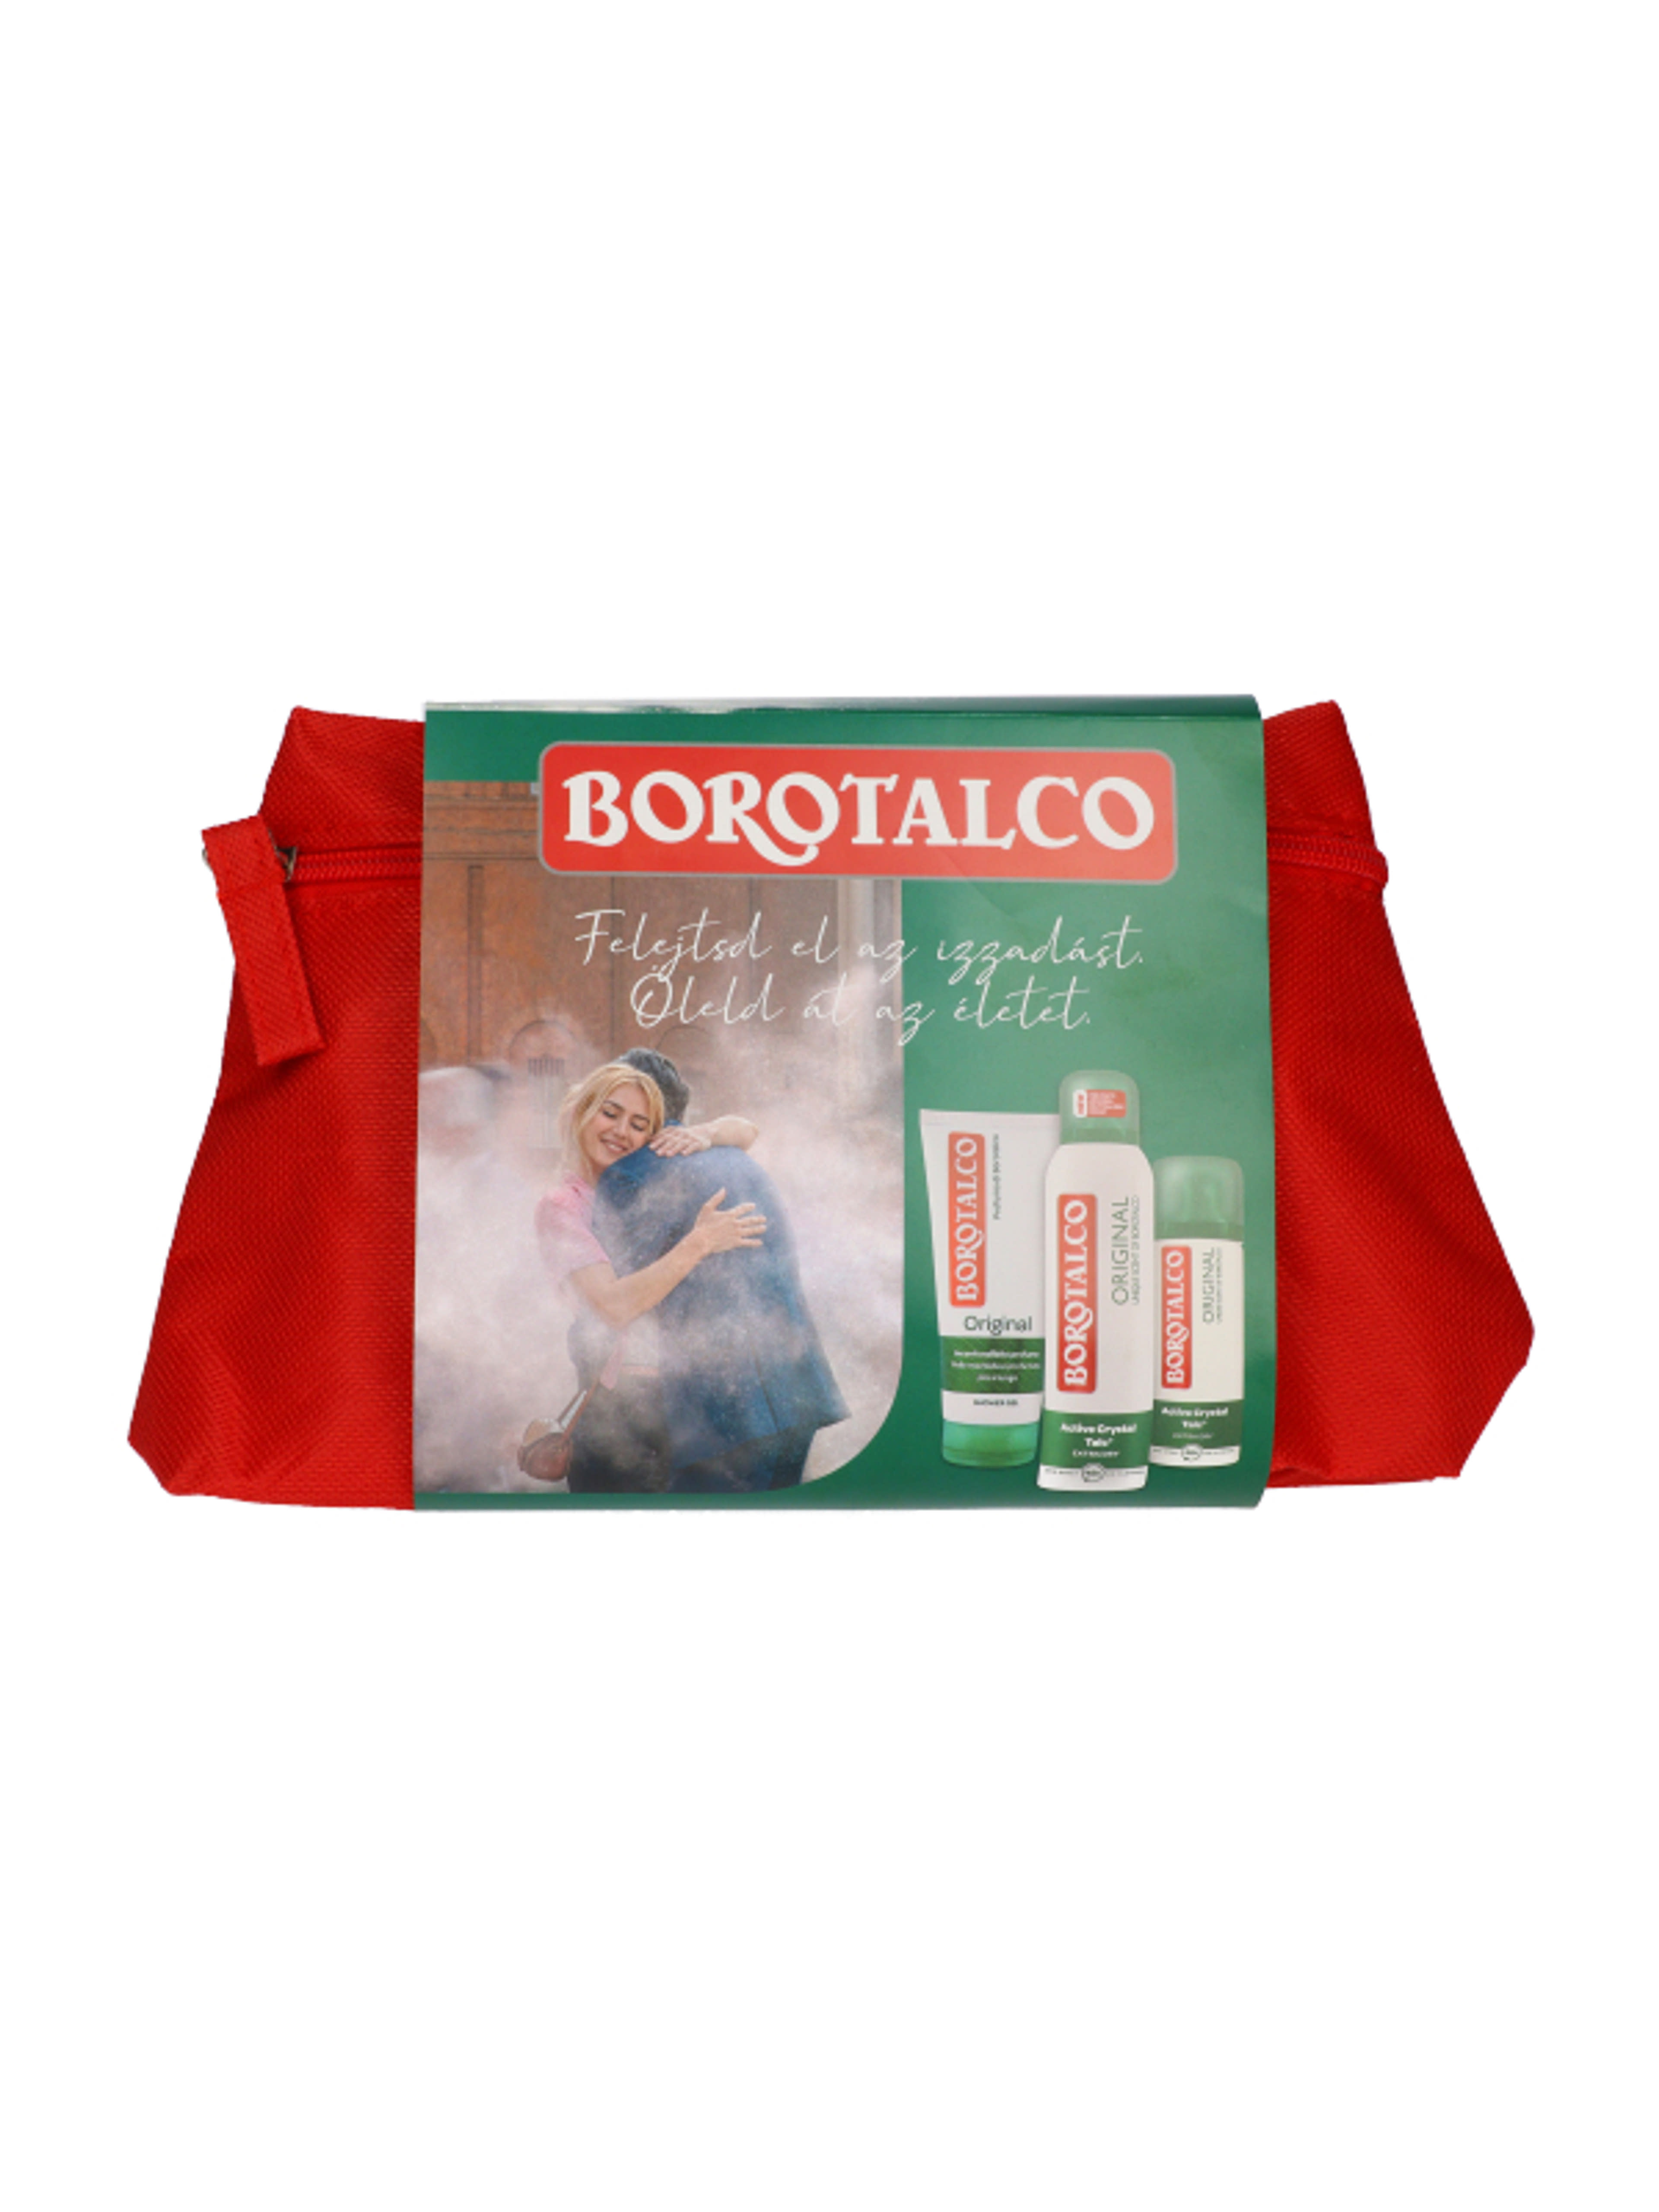 Borotalco Original ajándékcsomag - 1 db